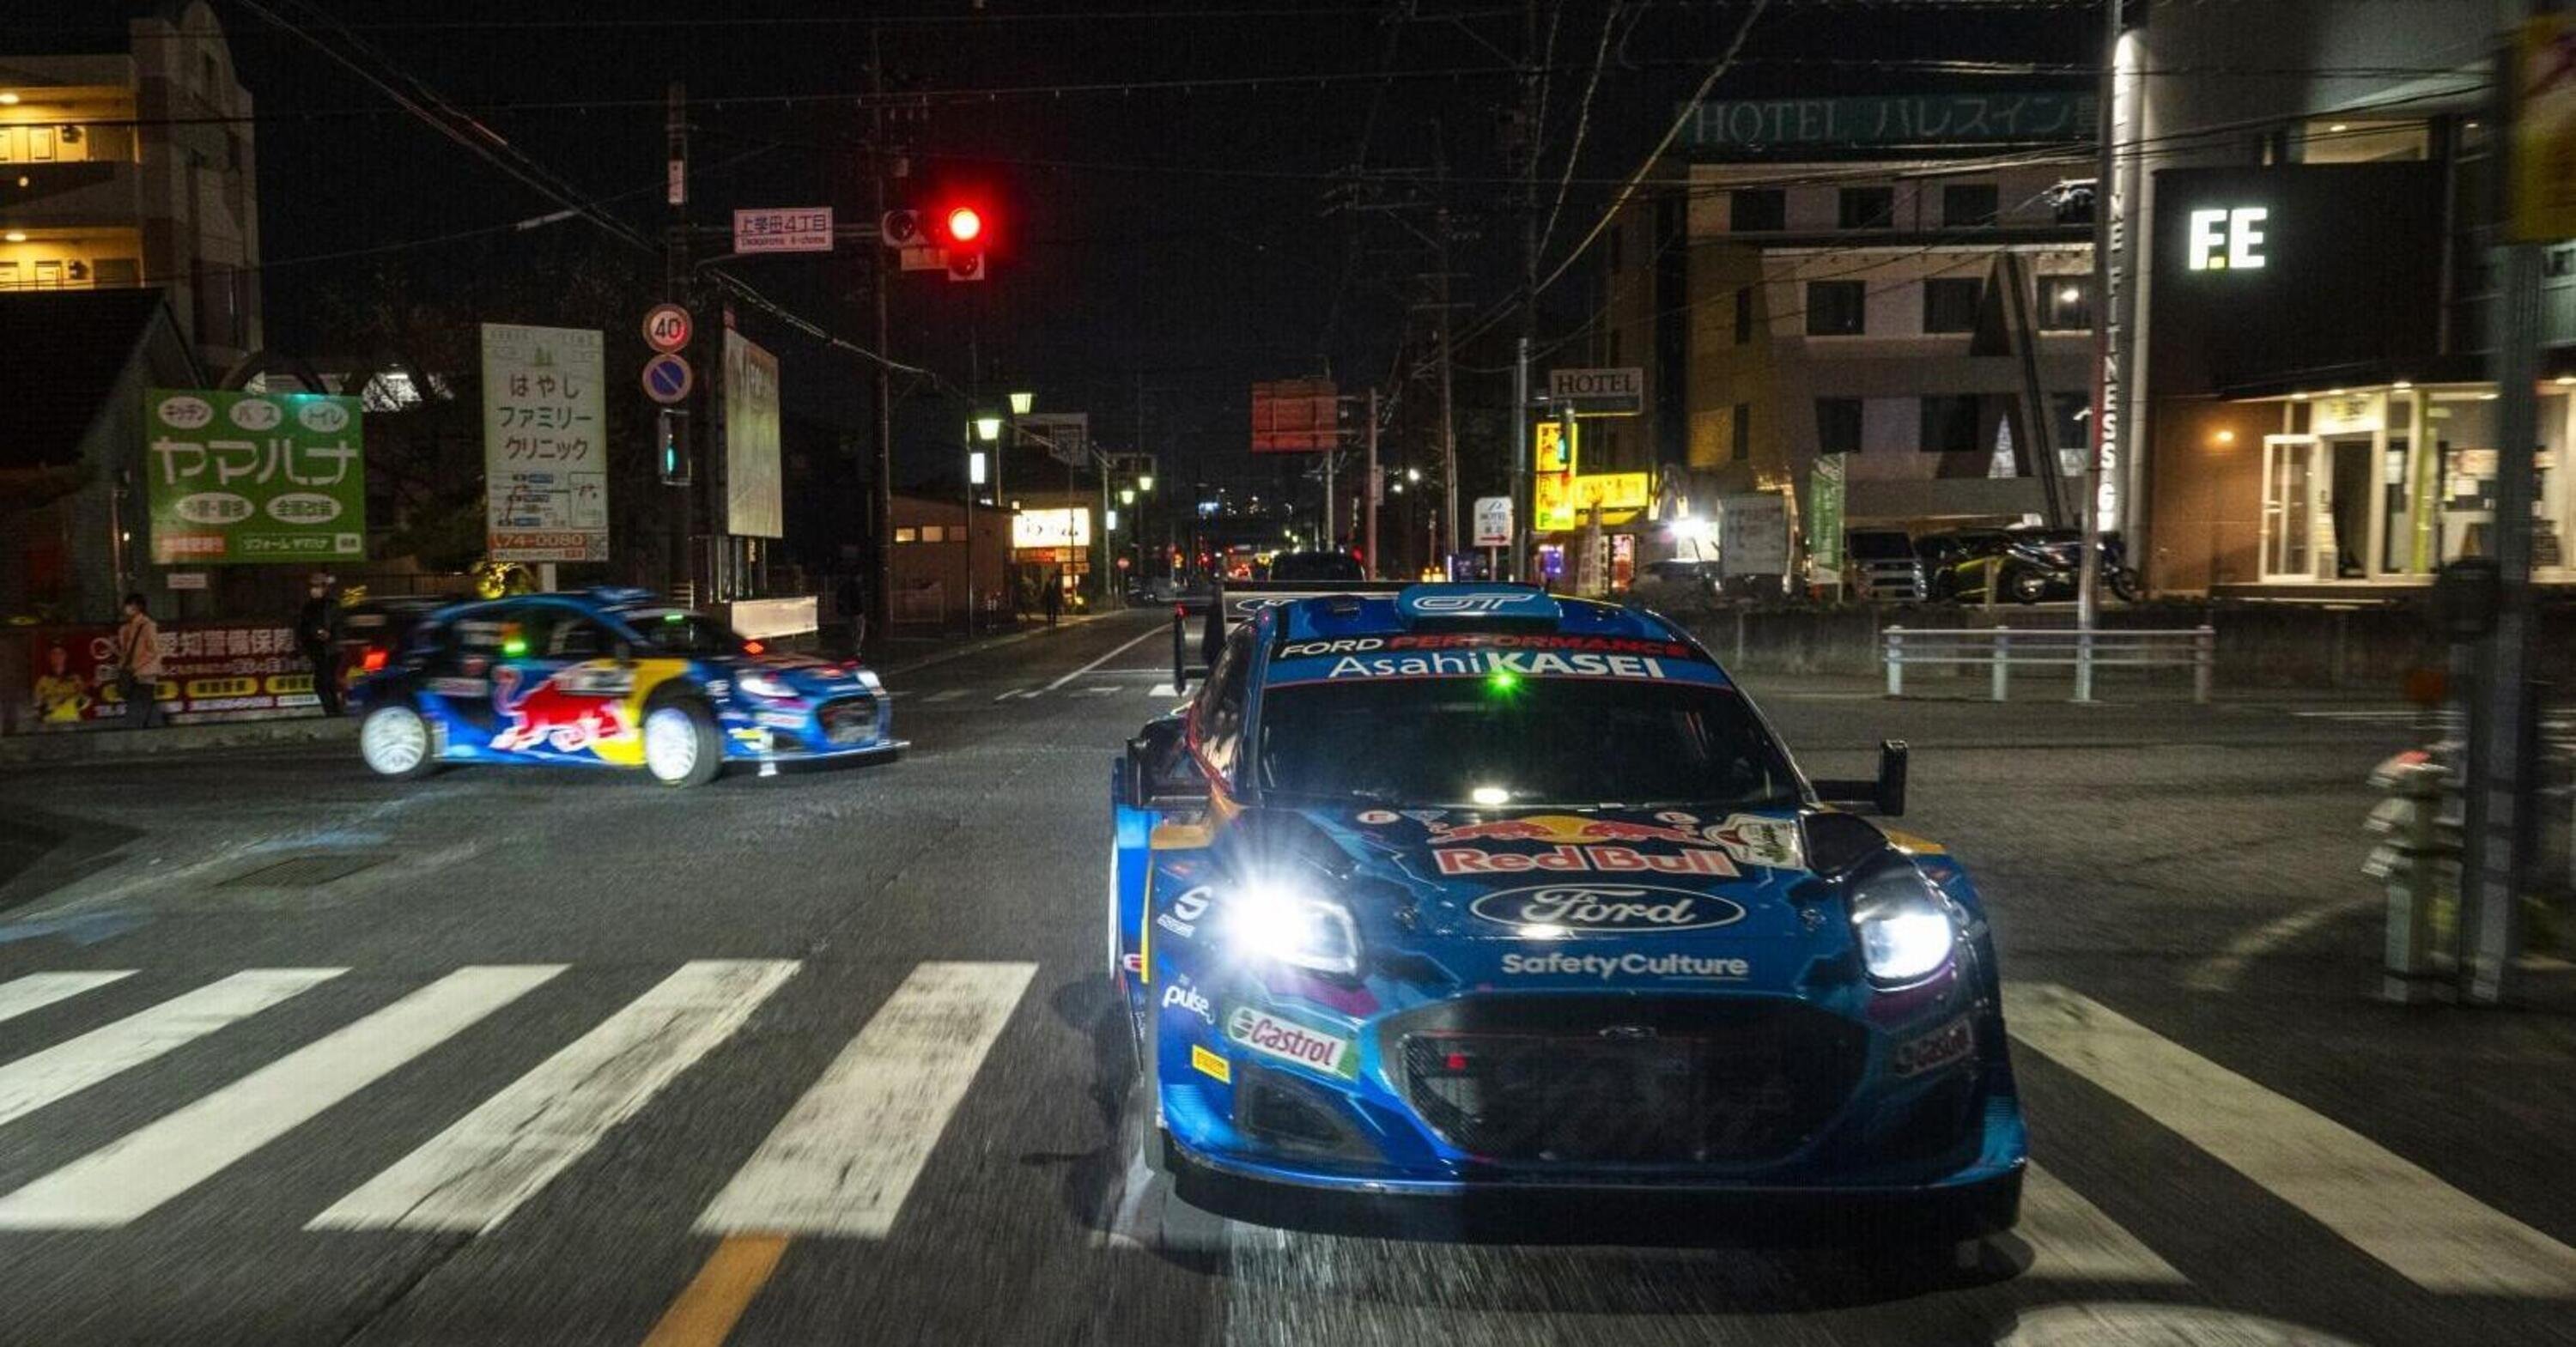 WRC23 Japan D1. &Egrave; l&rsquo;ultima, poco in gioco, tanto interesse